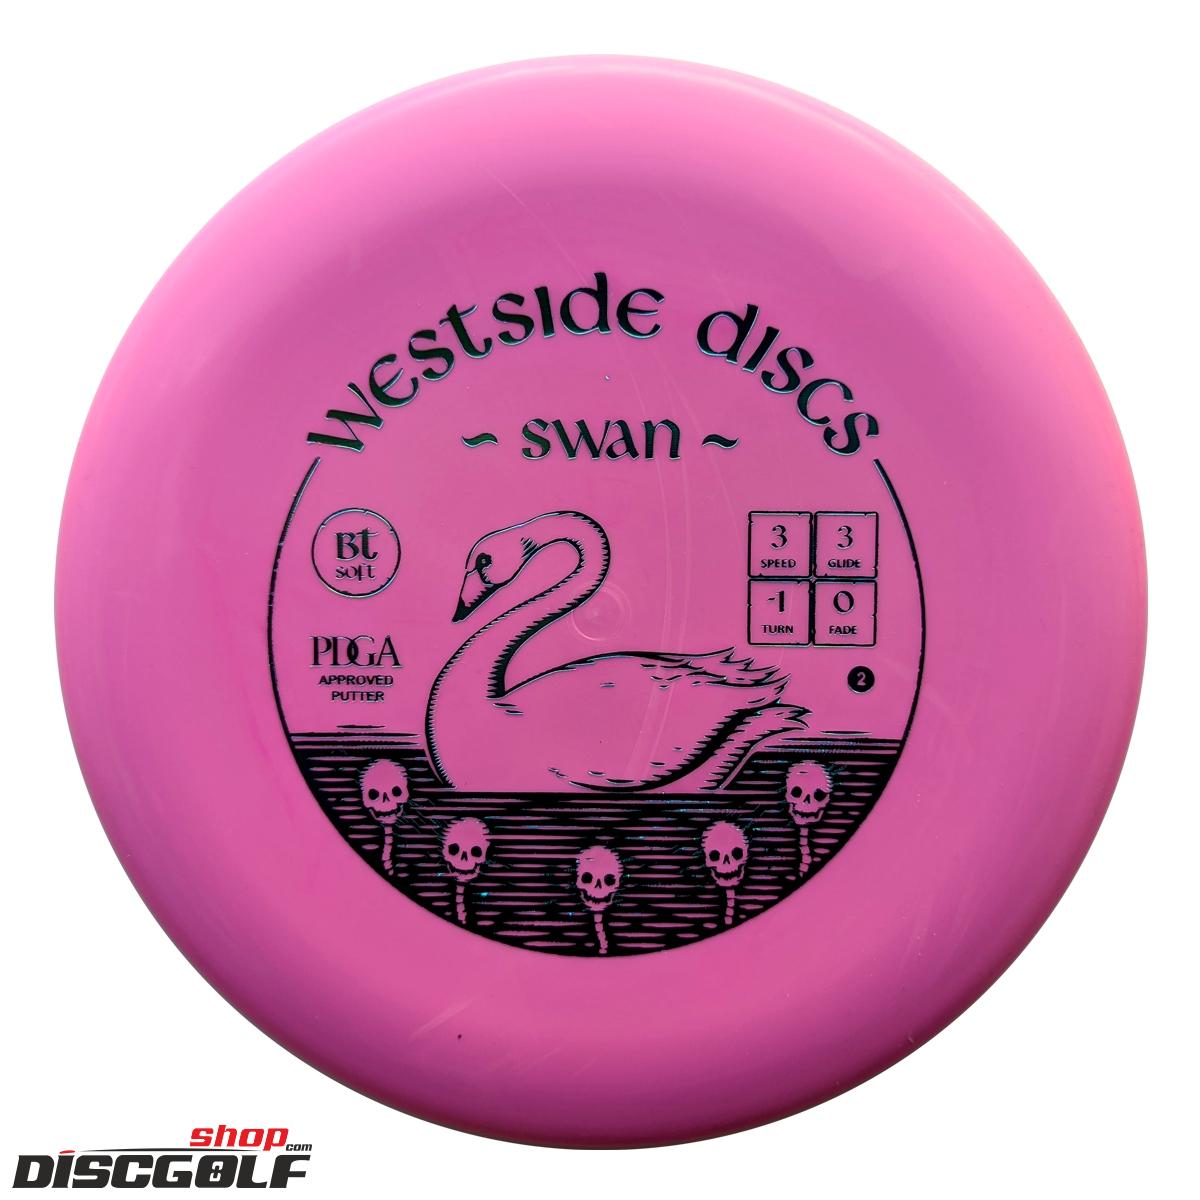 Westside Swan 2 BT Soft 2022